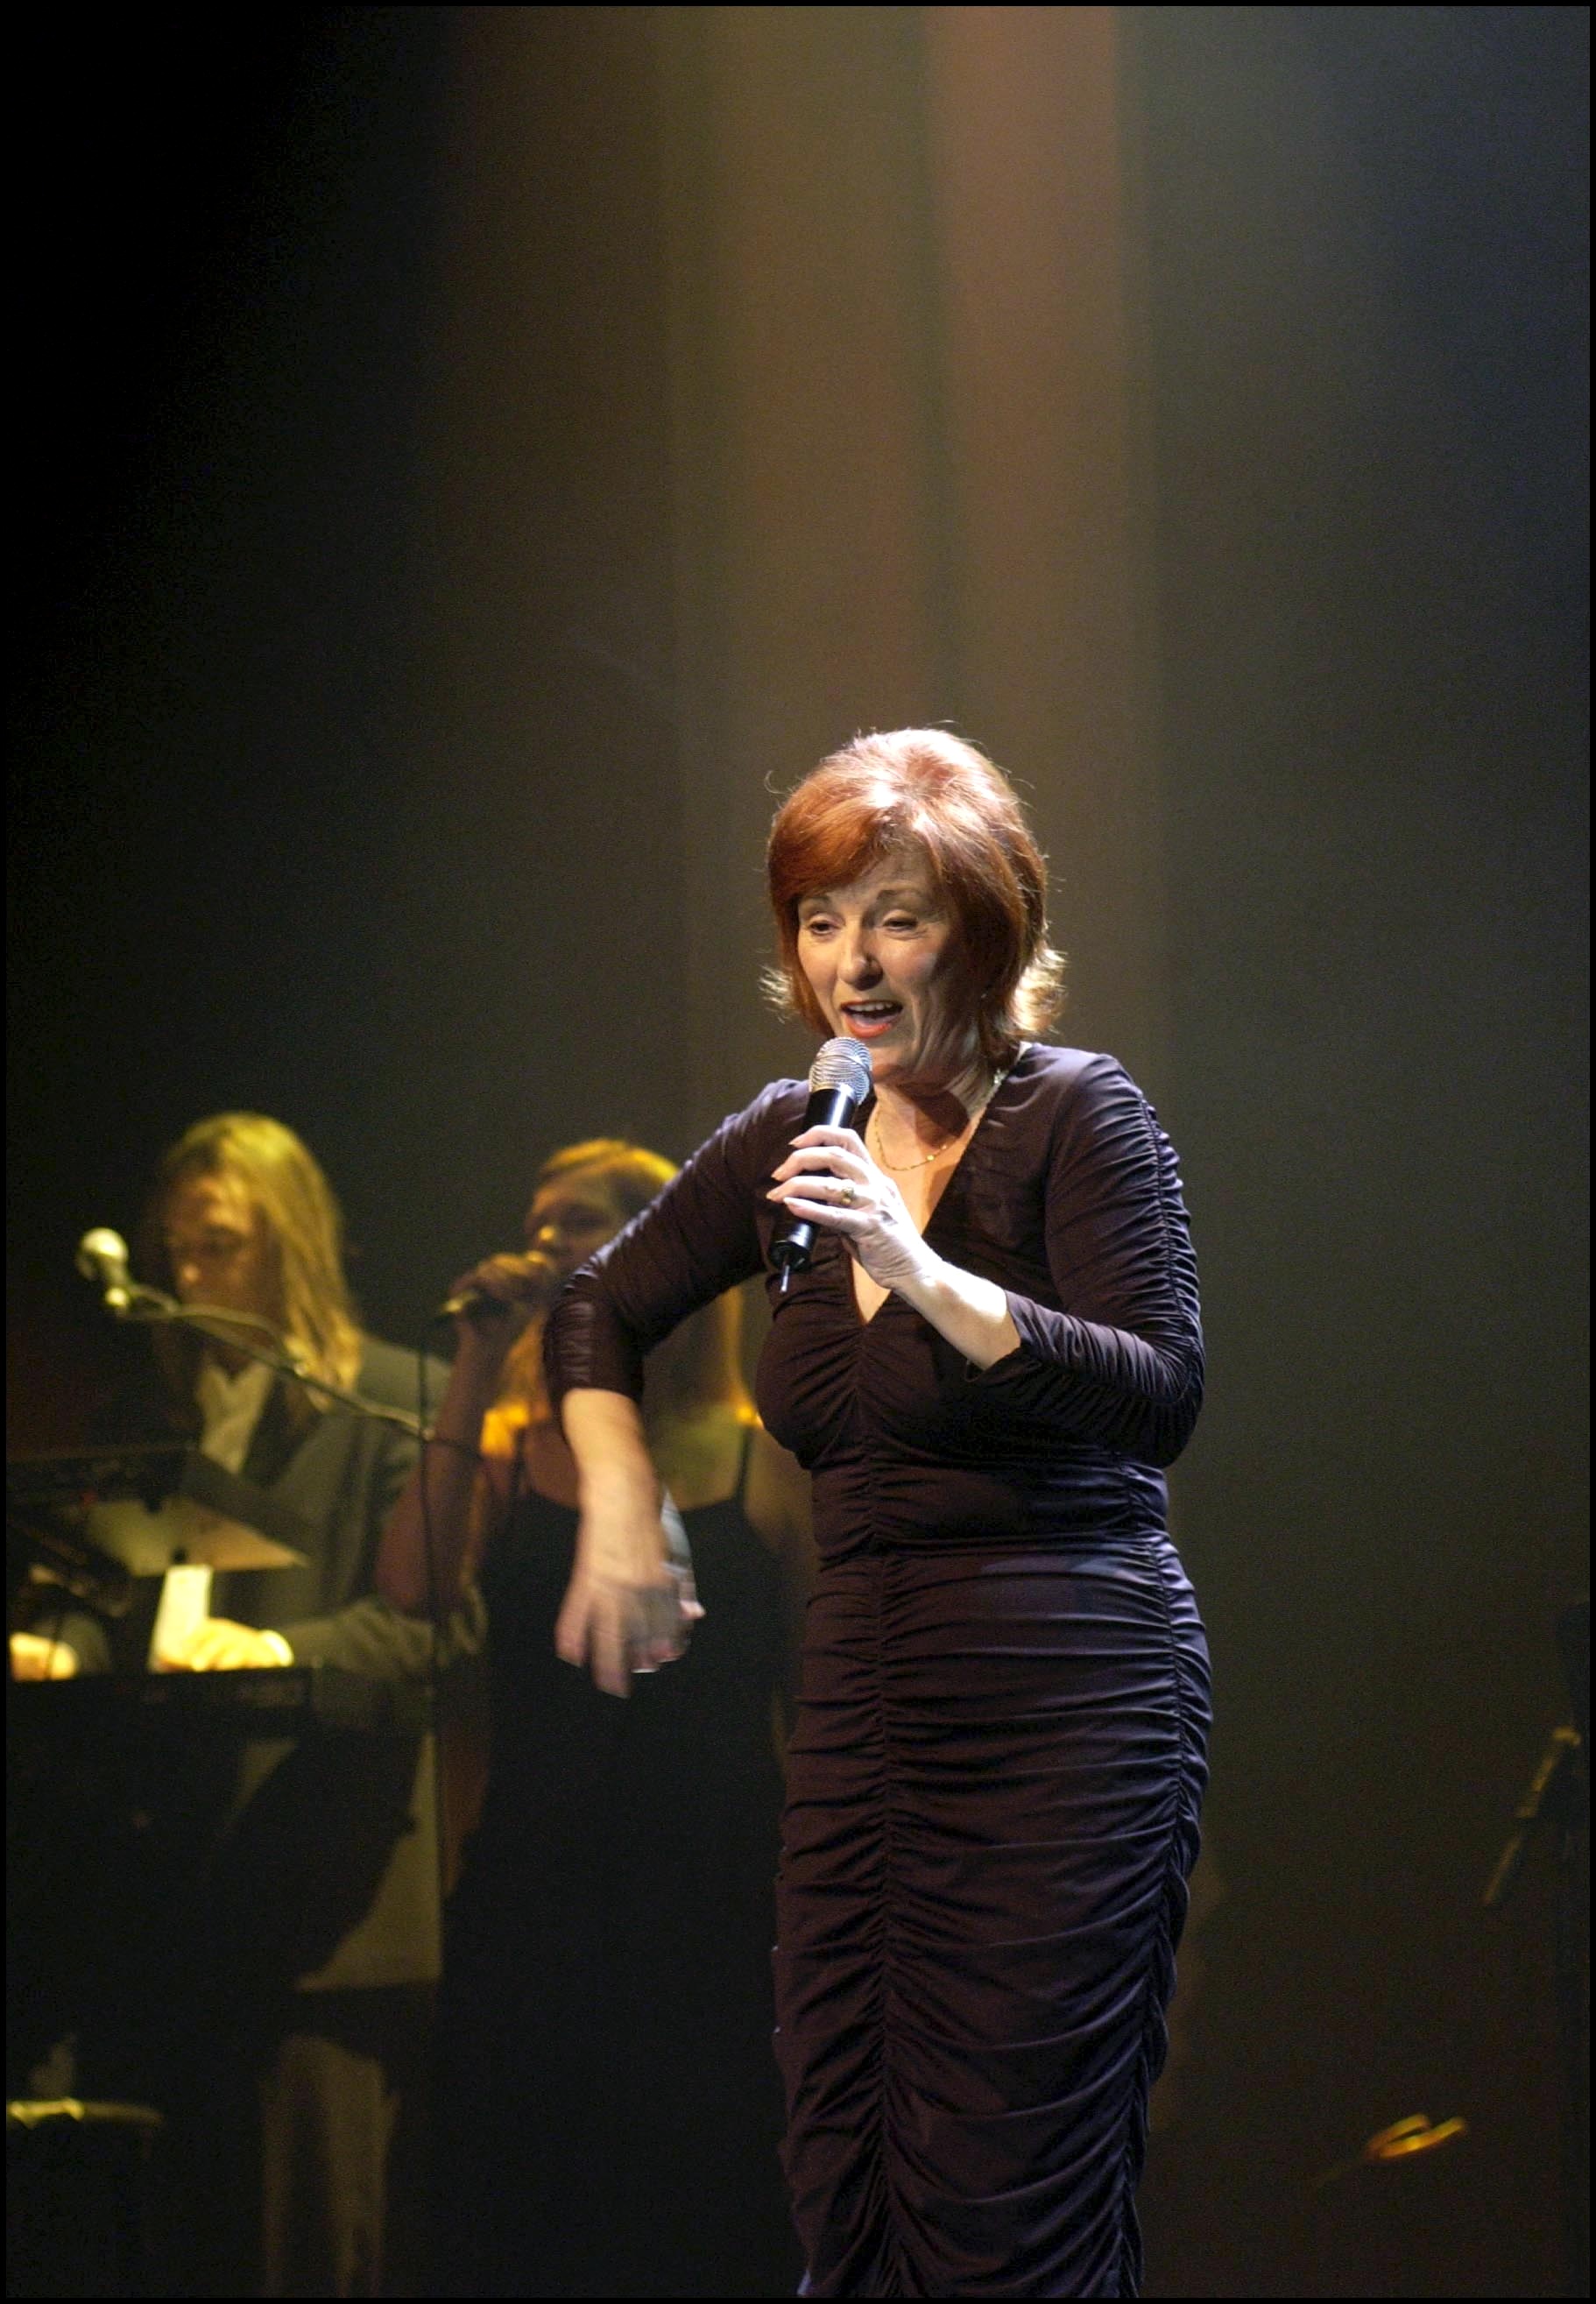 Claudette Dion à Montréal, Canada, le 11 octobre 2002 | Source : Getty Images